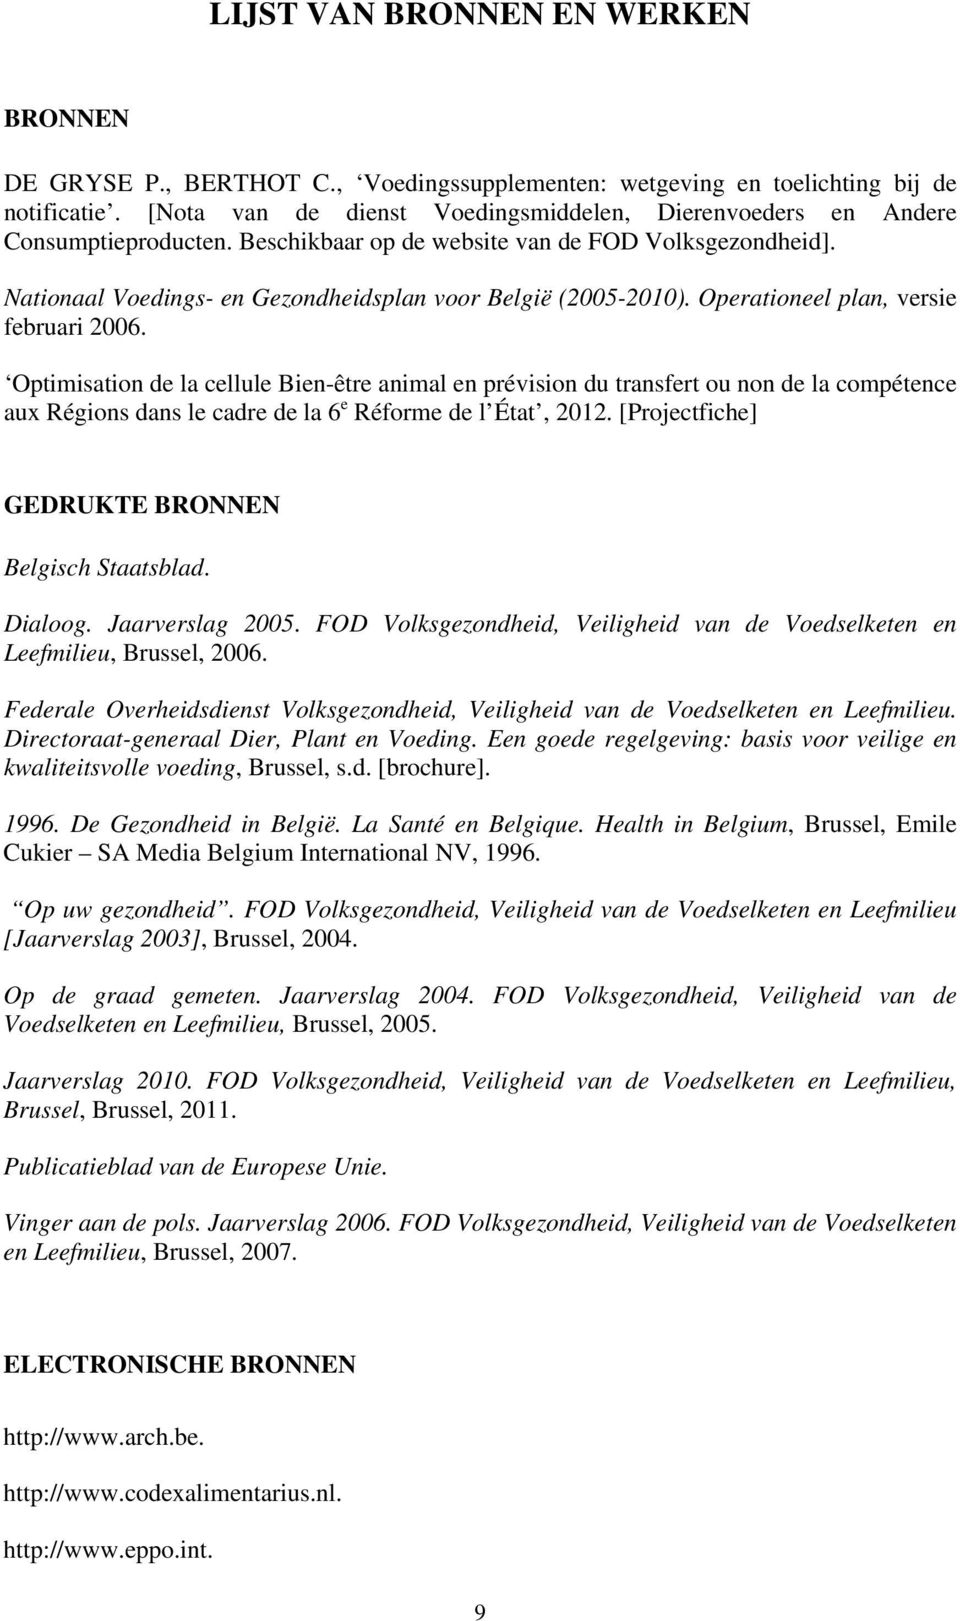 Nationaal Voedings- en Gezondheidsplan voor België (2005-2010). Operationeel plan, versie februari 2006.